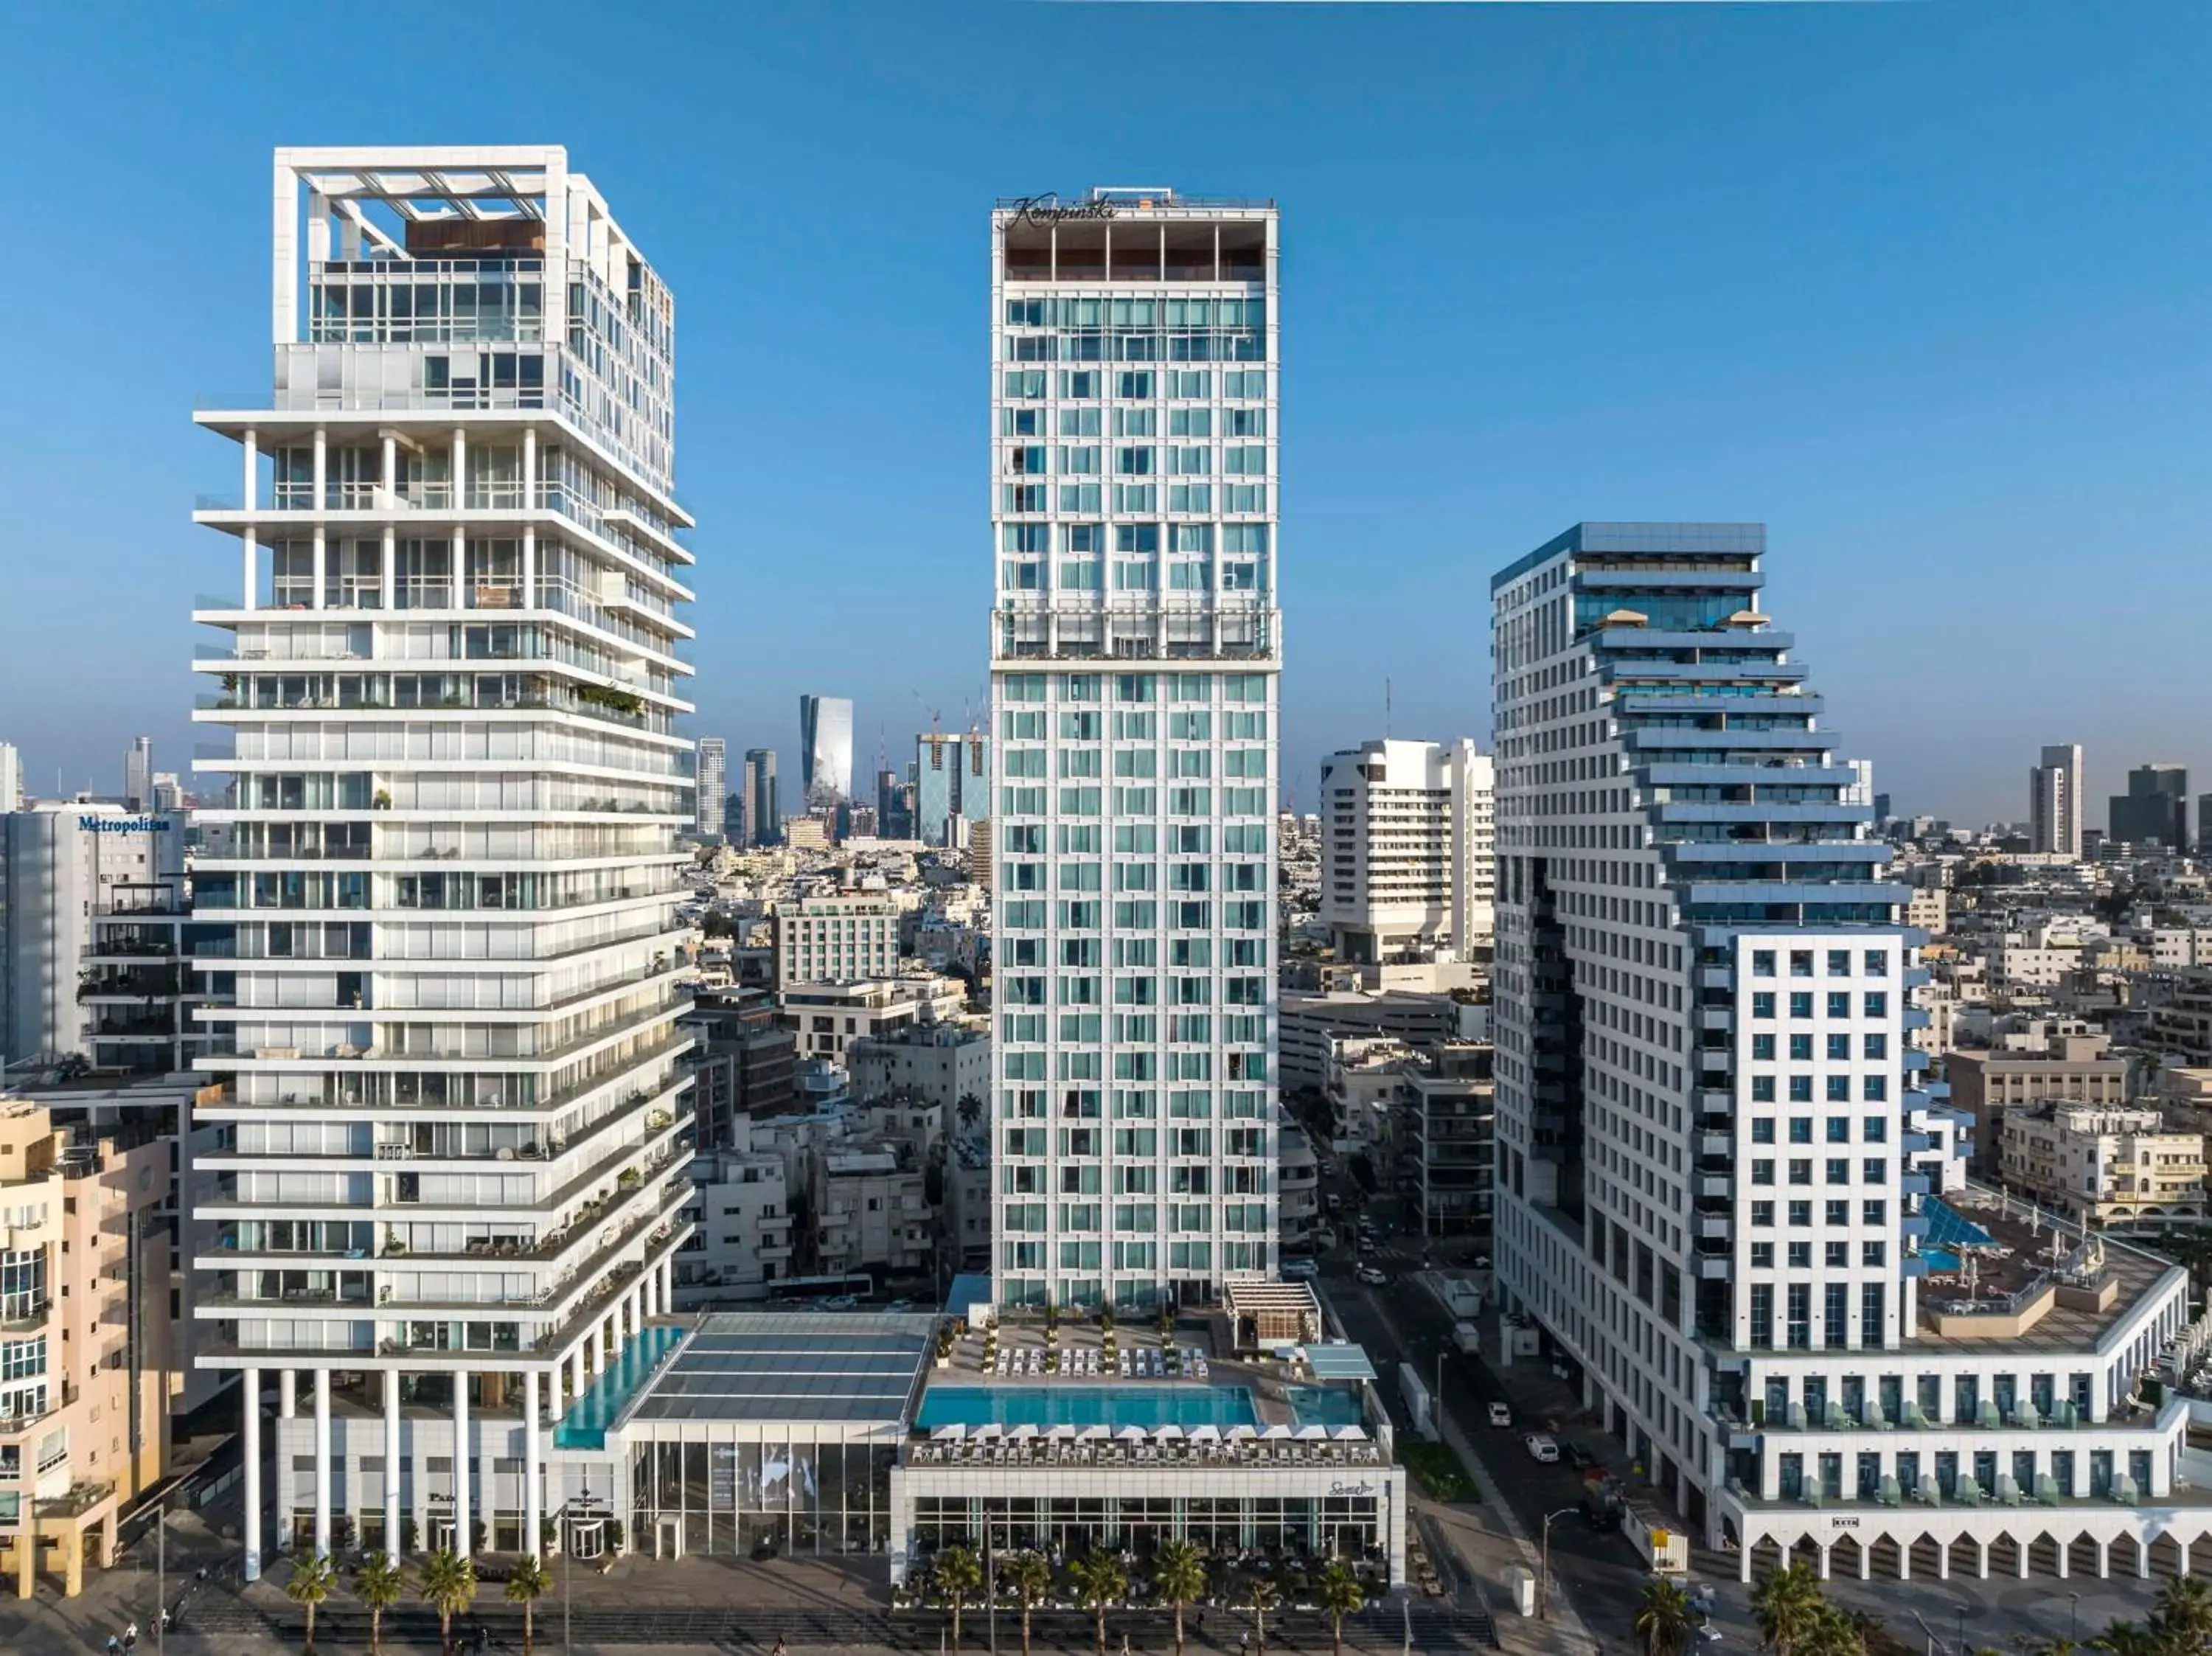 Property building in The David Kempinski Tel Aviv